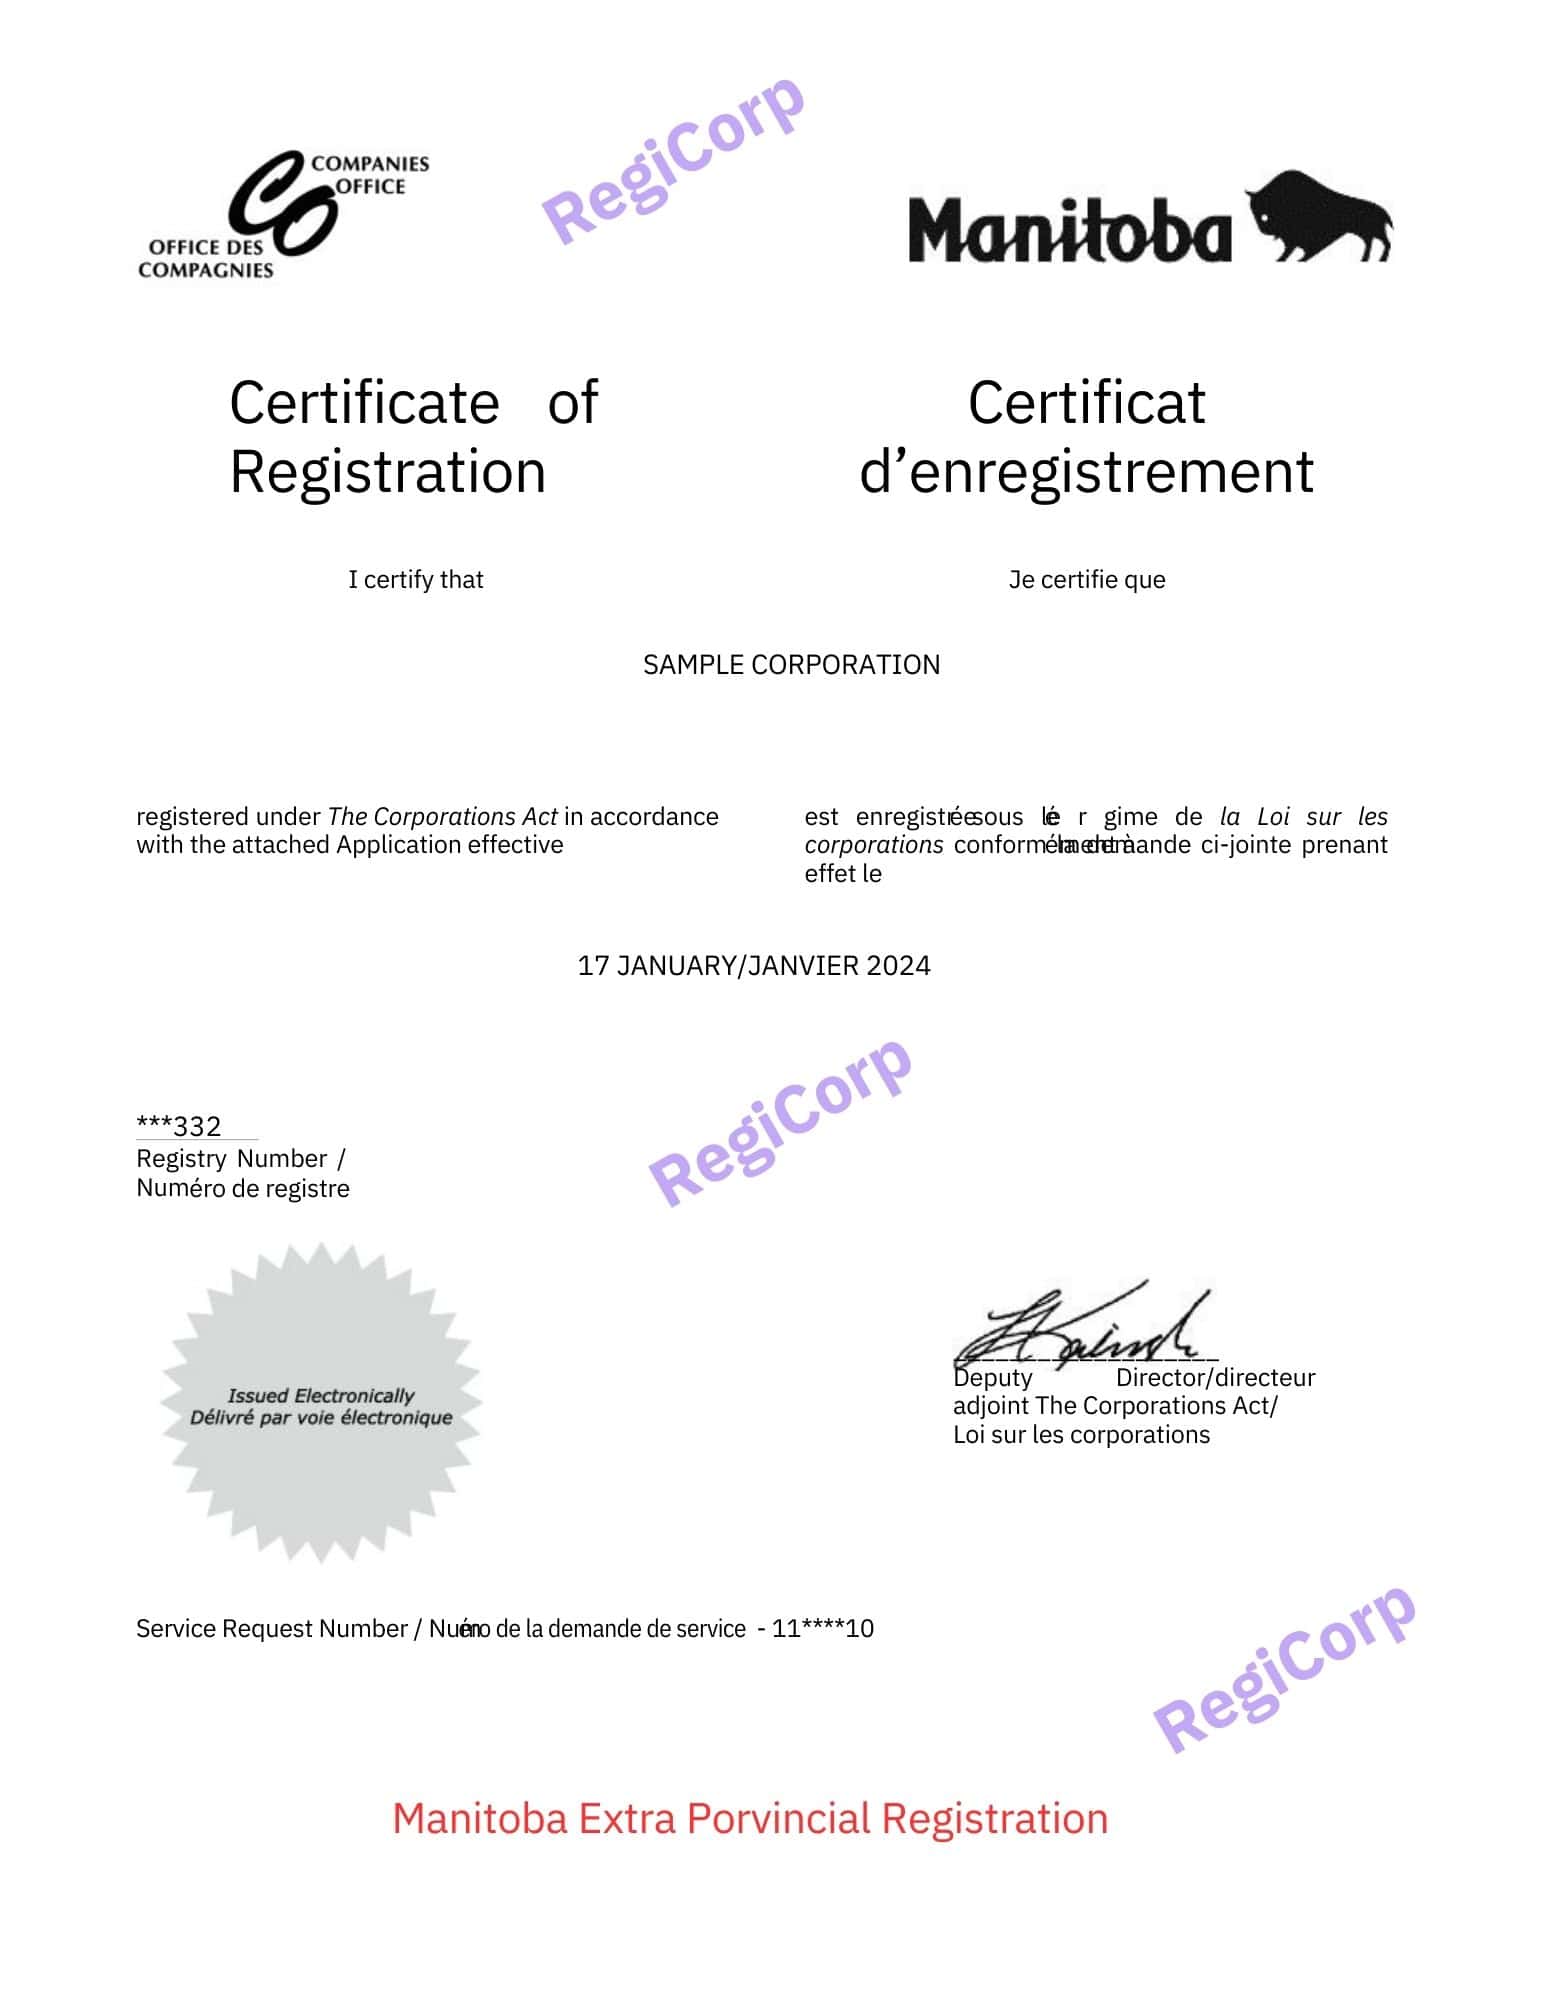 Extra Provincial Registration in Manitoba